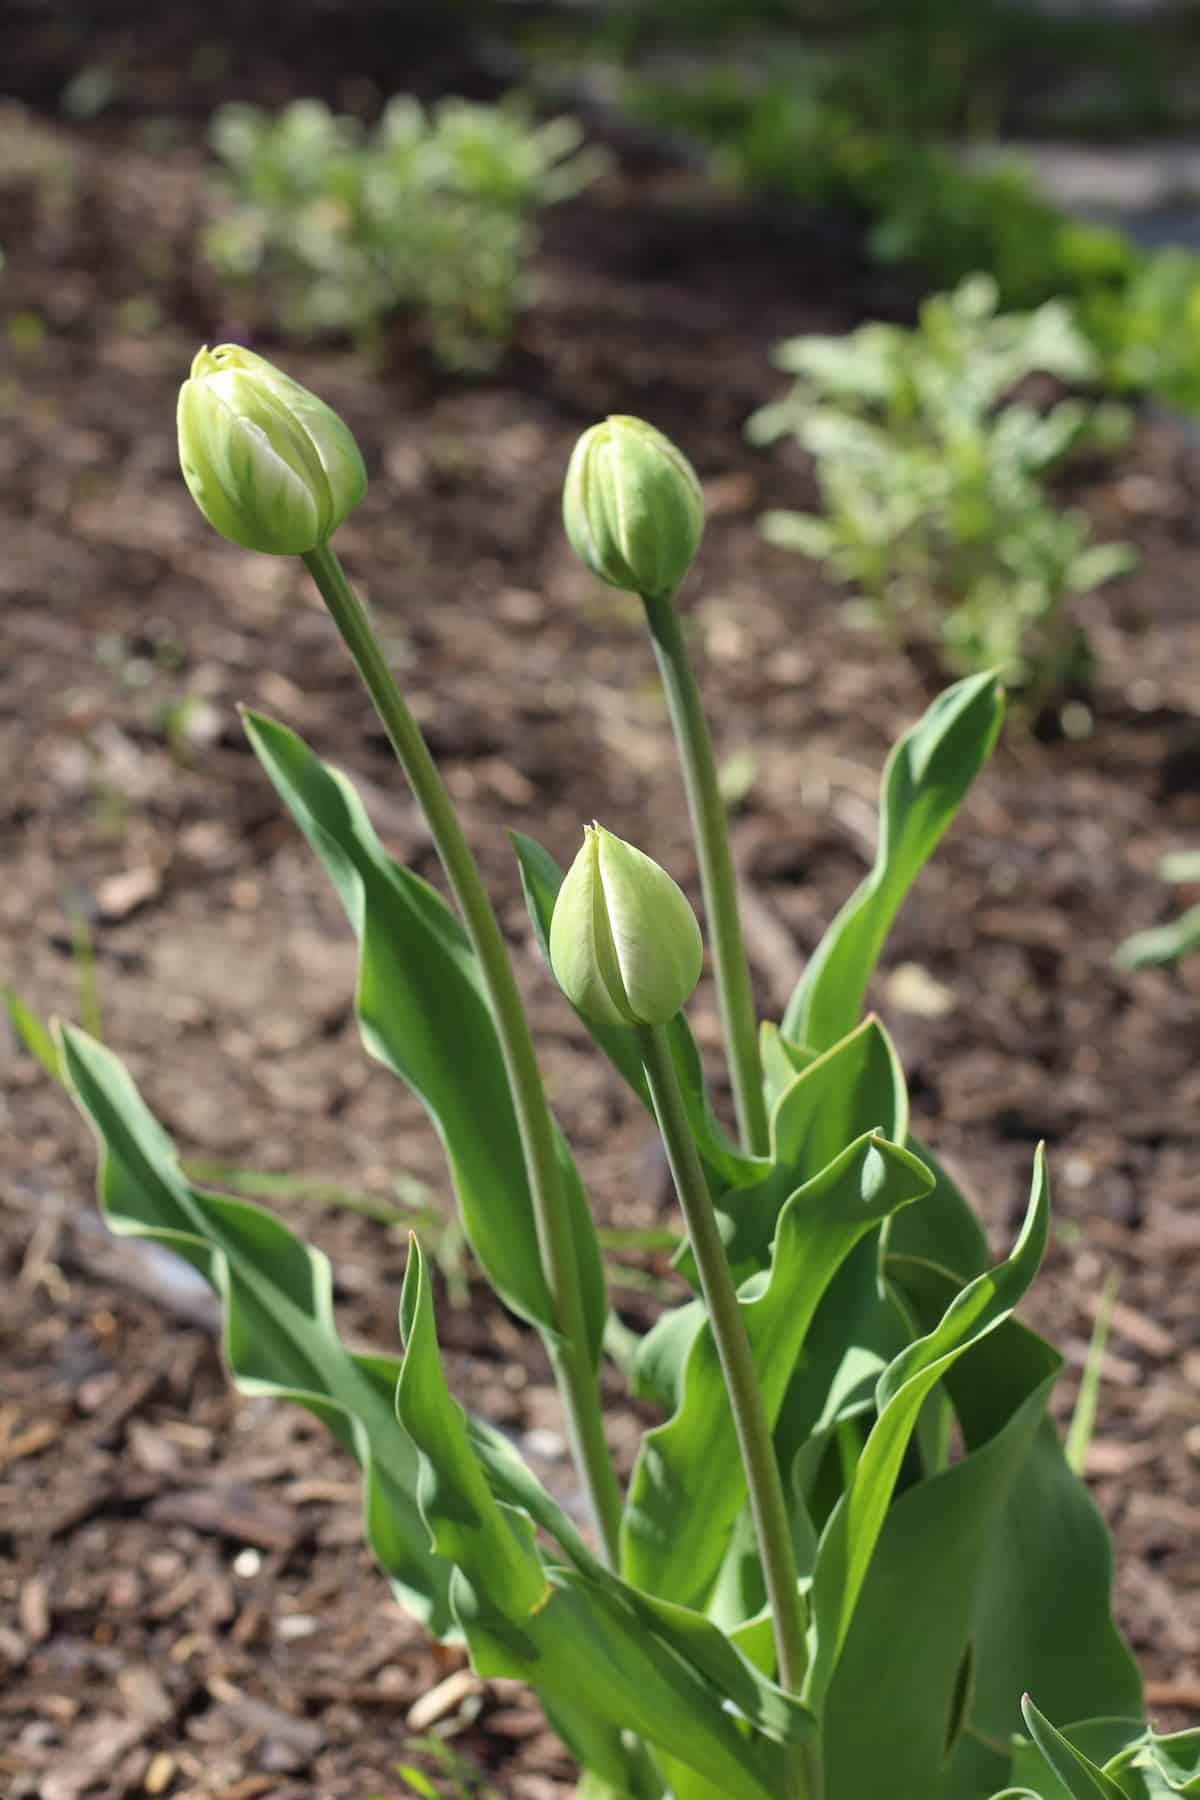 Tulip bulbs in the garden